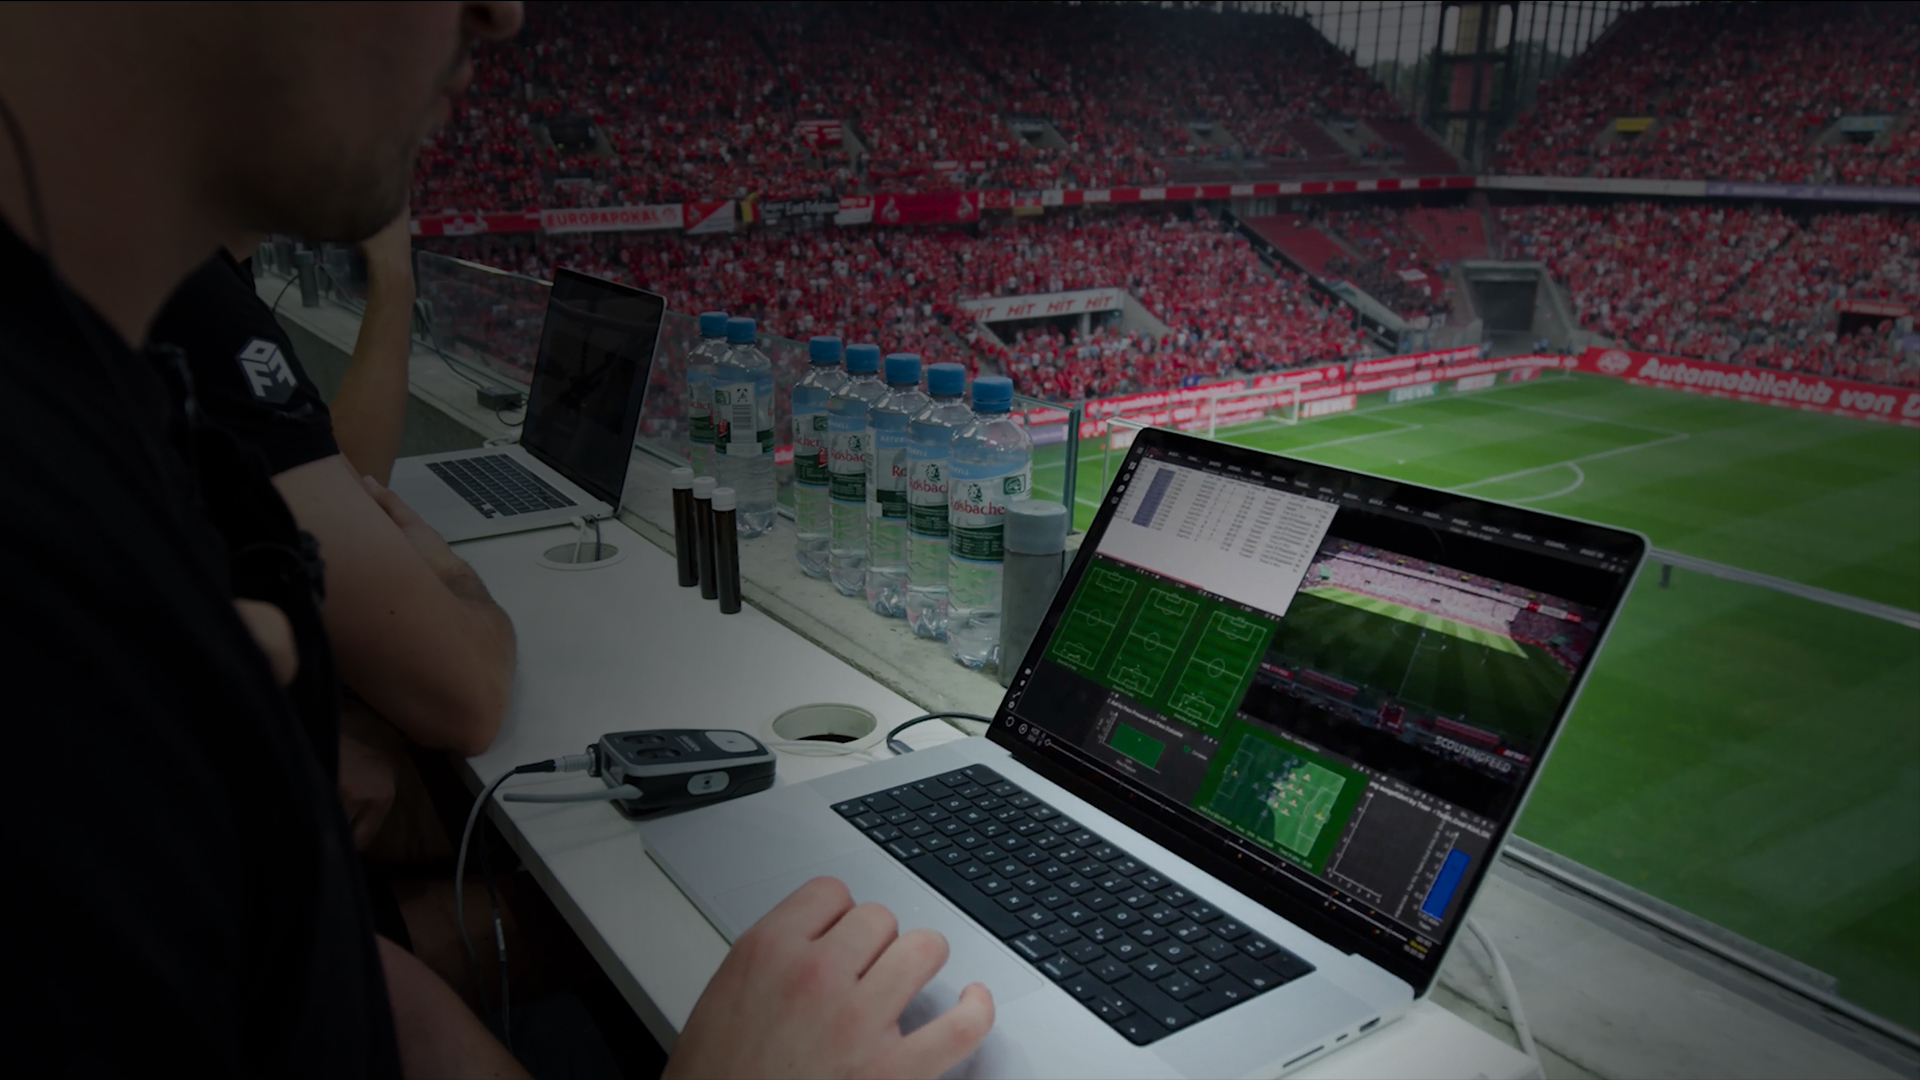 Комплексный обзор настройки системы Catapult для анализа в реальном времени во время футбольного матча с акцентом на интеграцию видео и данных в реальном времени.